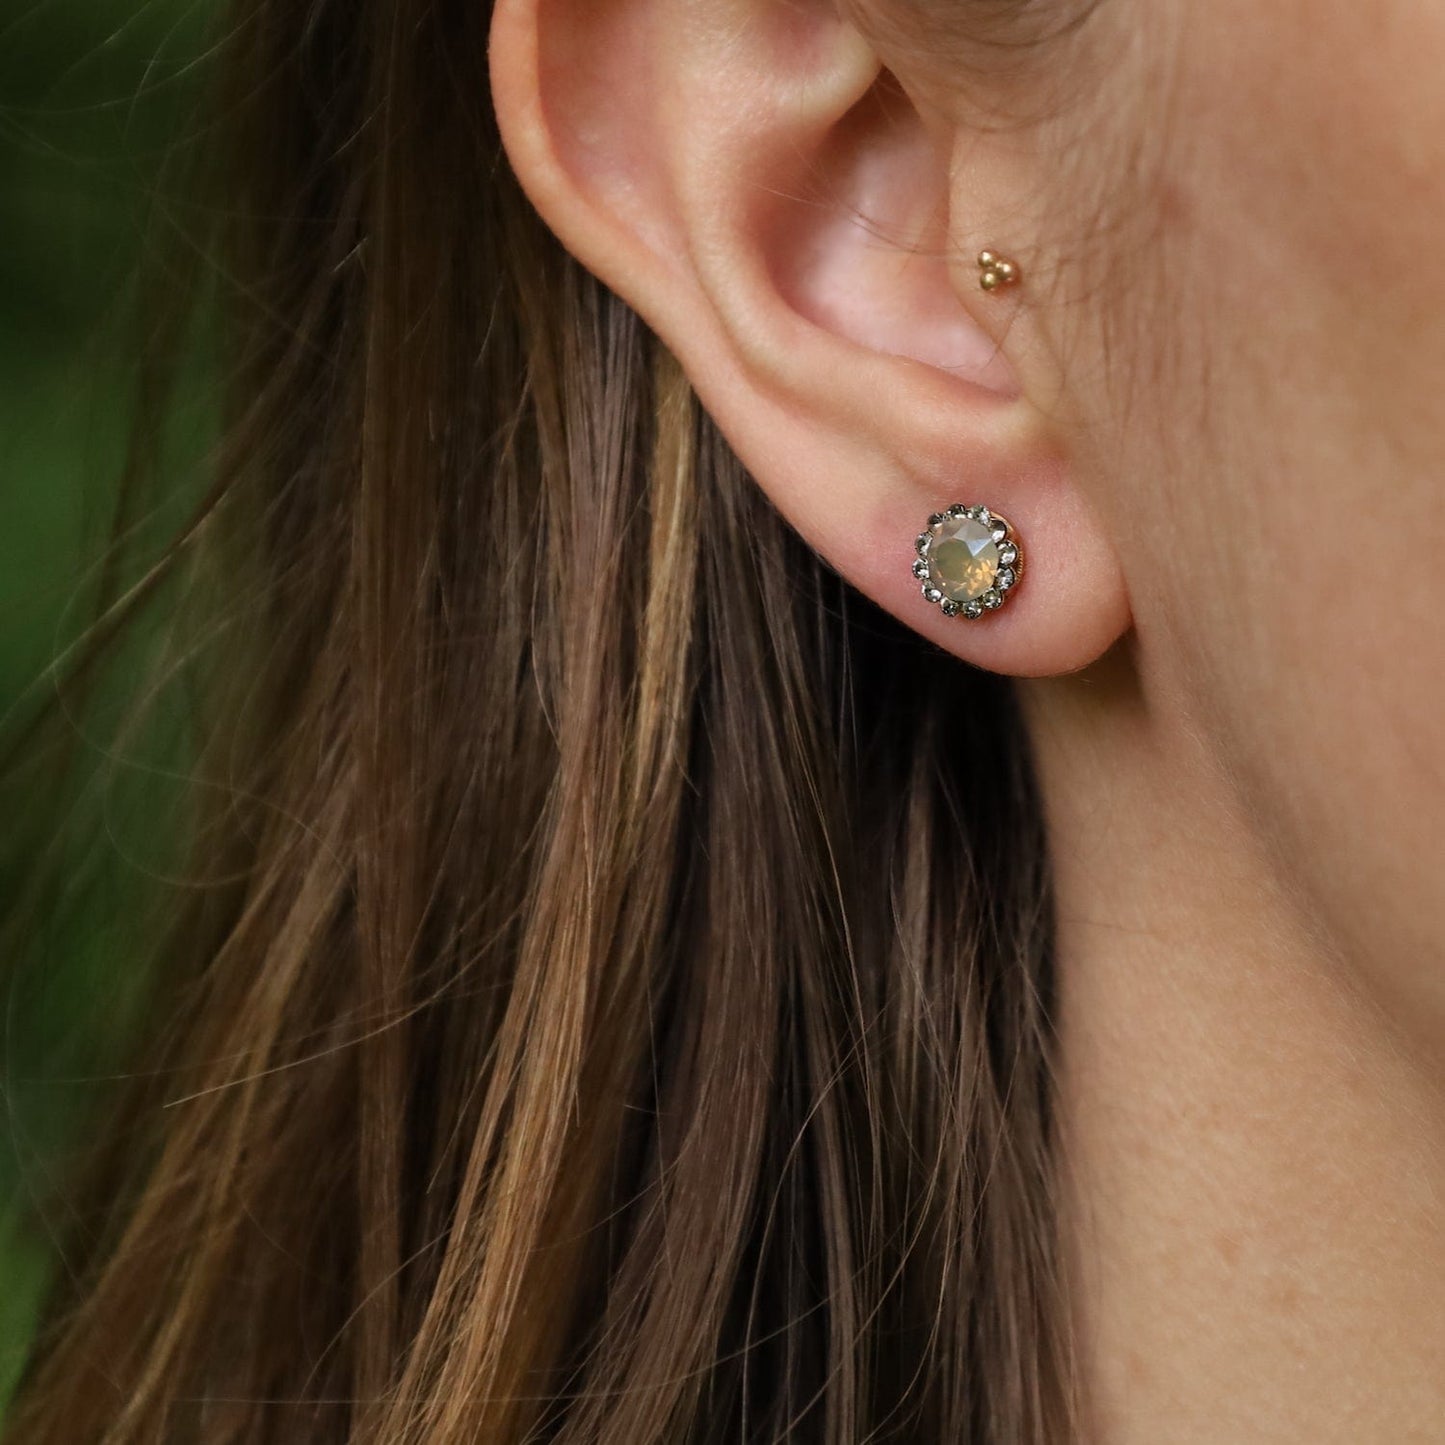 EAR-JM Rhinestone Stud Earring